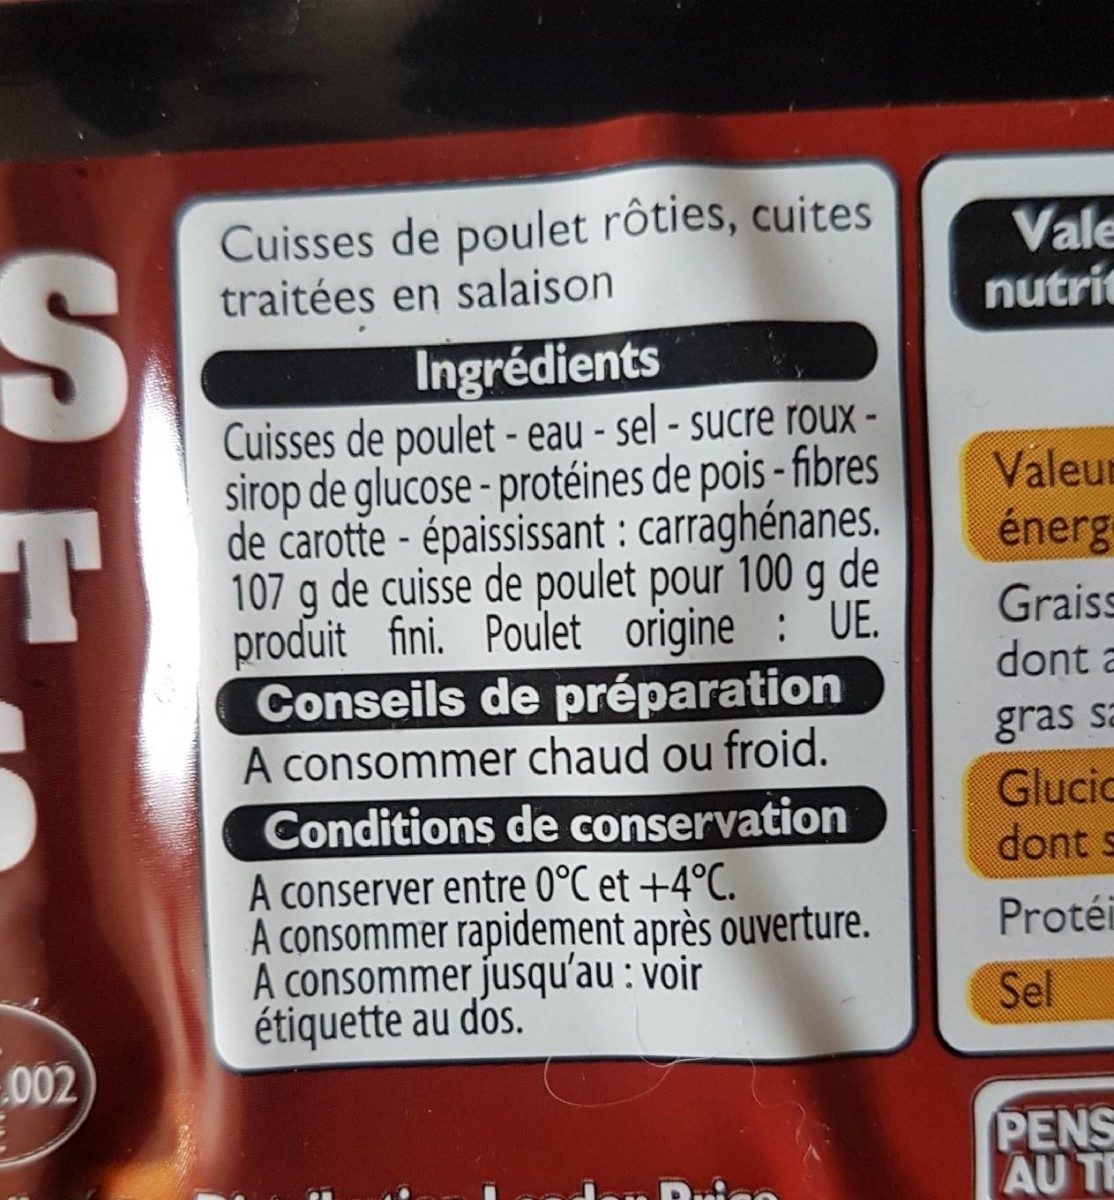 Cuisse de poulet rôties - Ingredients - fr